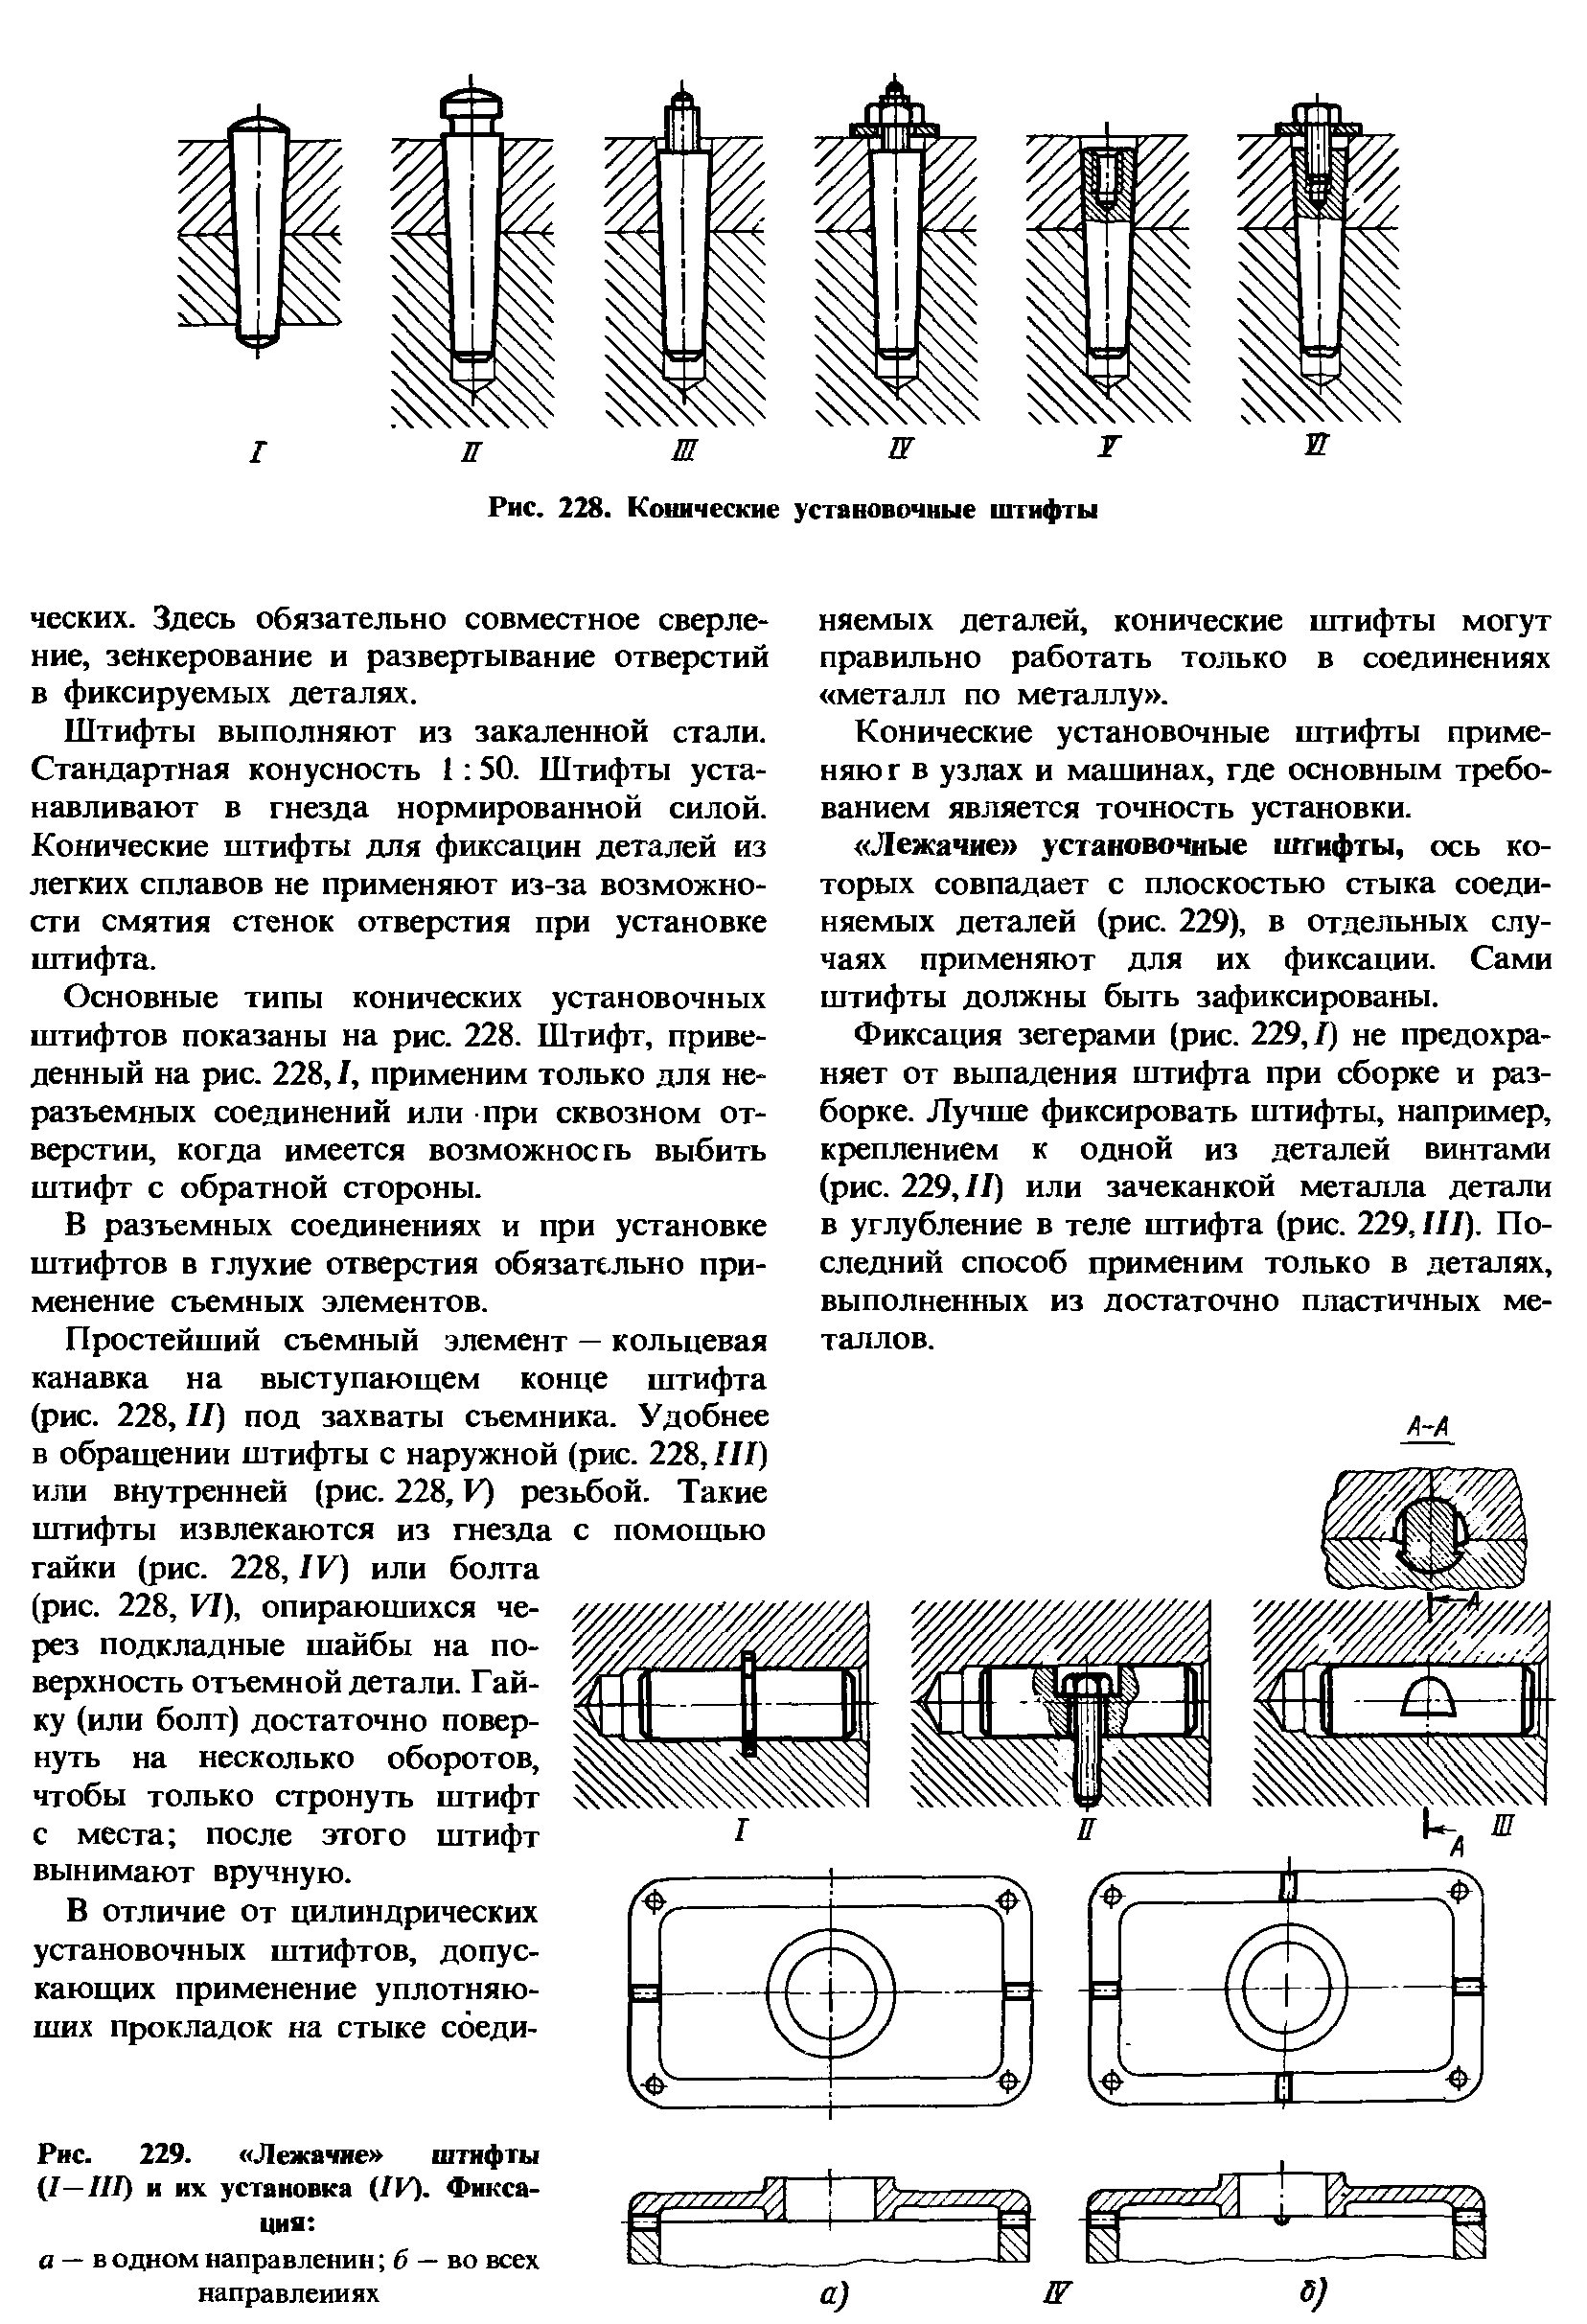 Рис. 229. Лежачие штифты (1-111) и их установка (IV). Фиксация 
